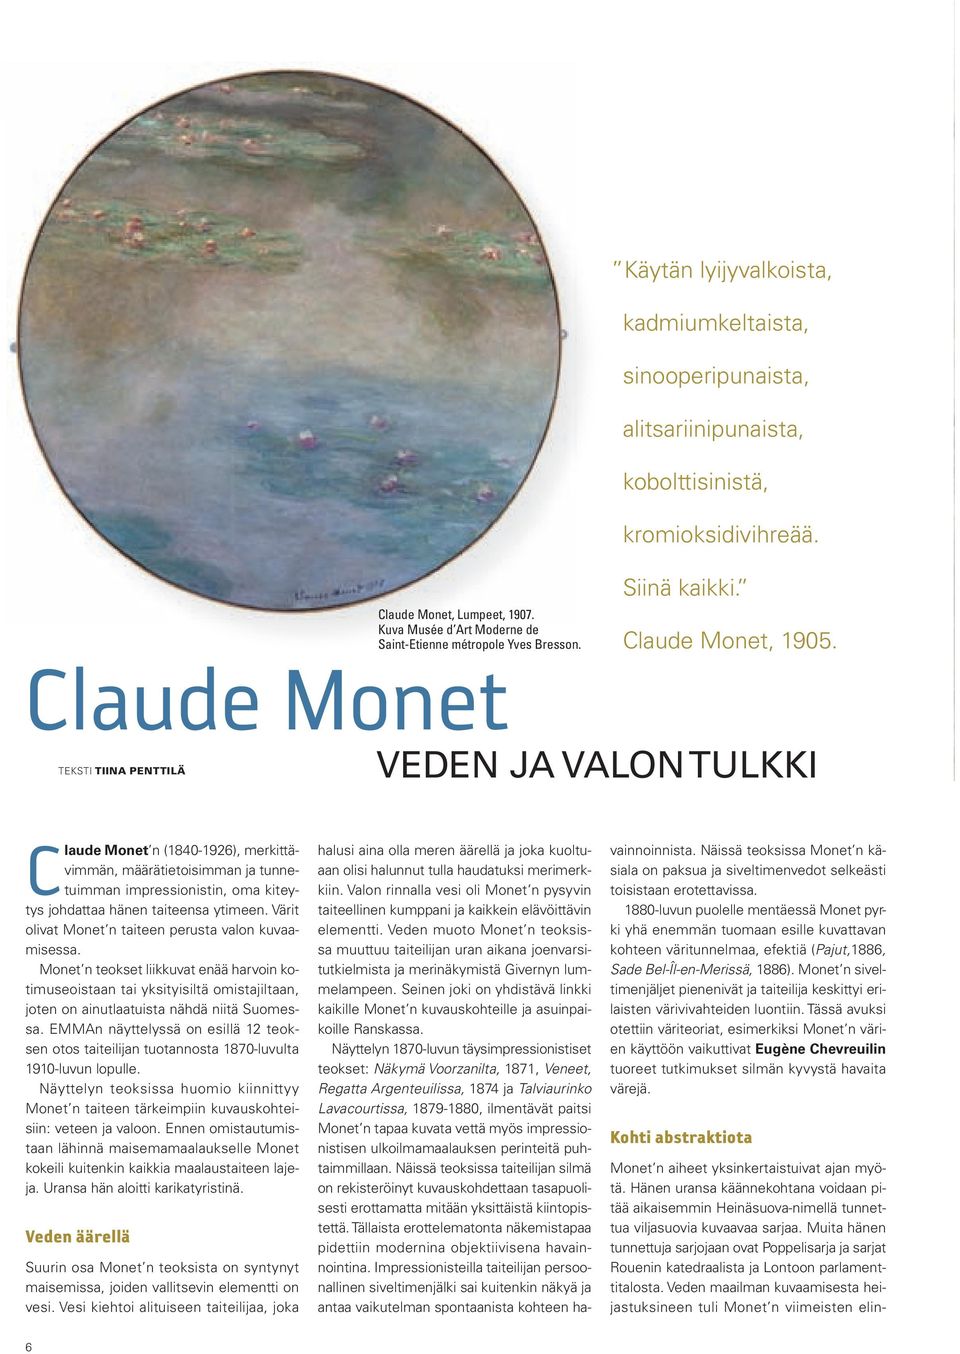 VEDEN JA VALON TULKKI Claude Monet n (1840-1926), merkittävimmän, määrätietoisimman ja tunnetuimman impressionistin, oma kiteytys johdattaa hänen taiteensa ytimeen.